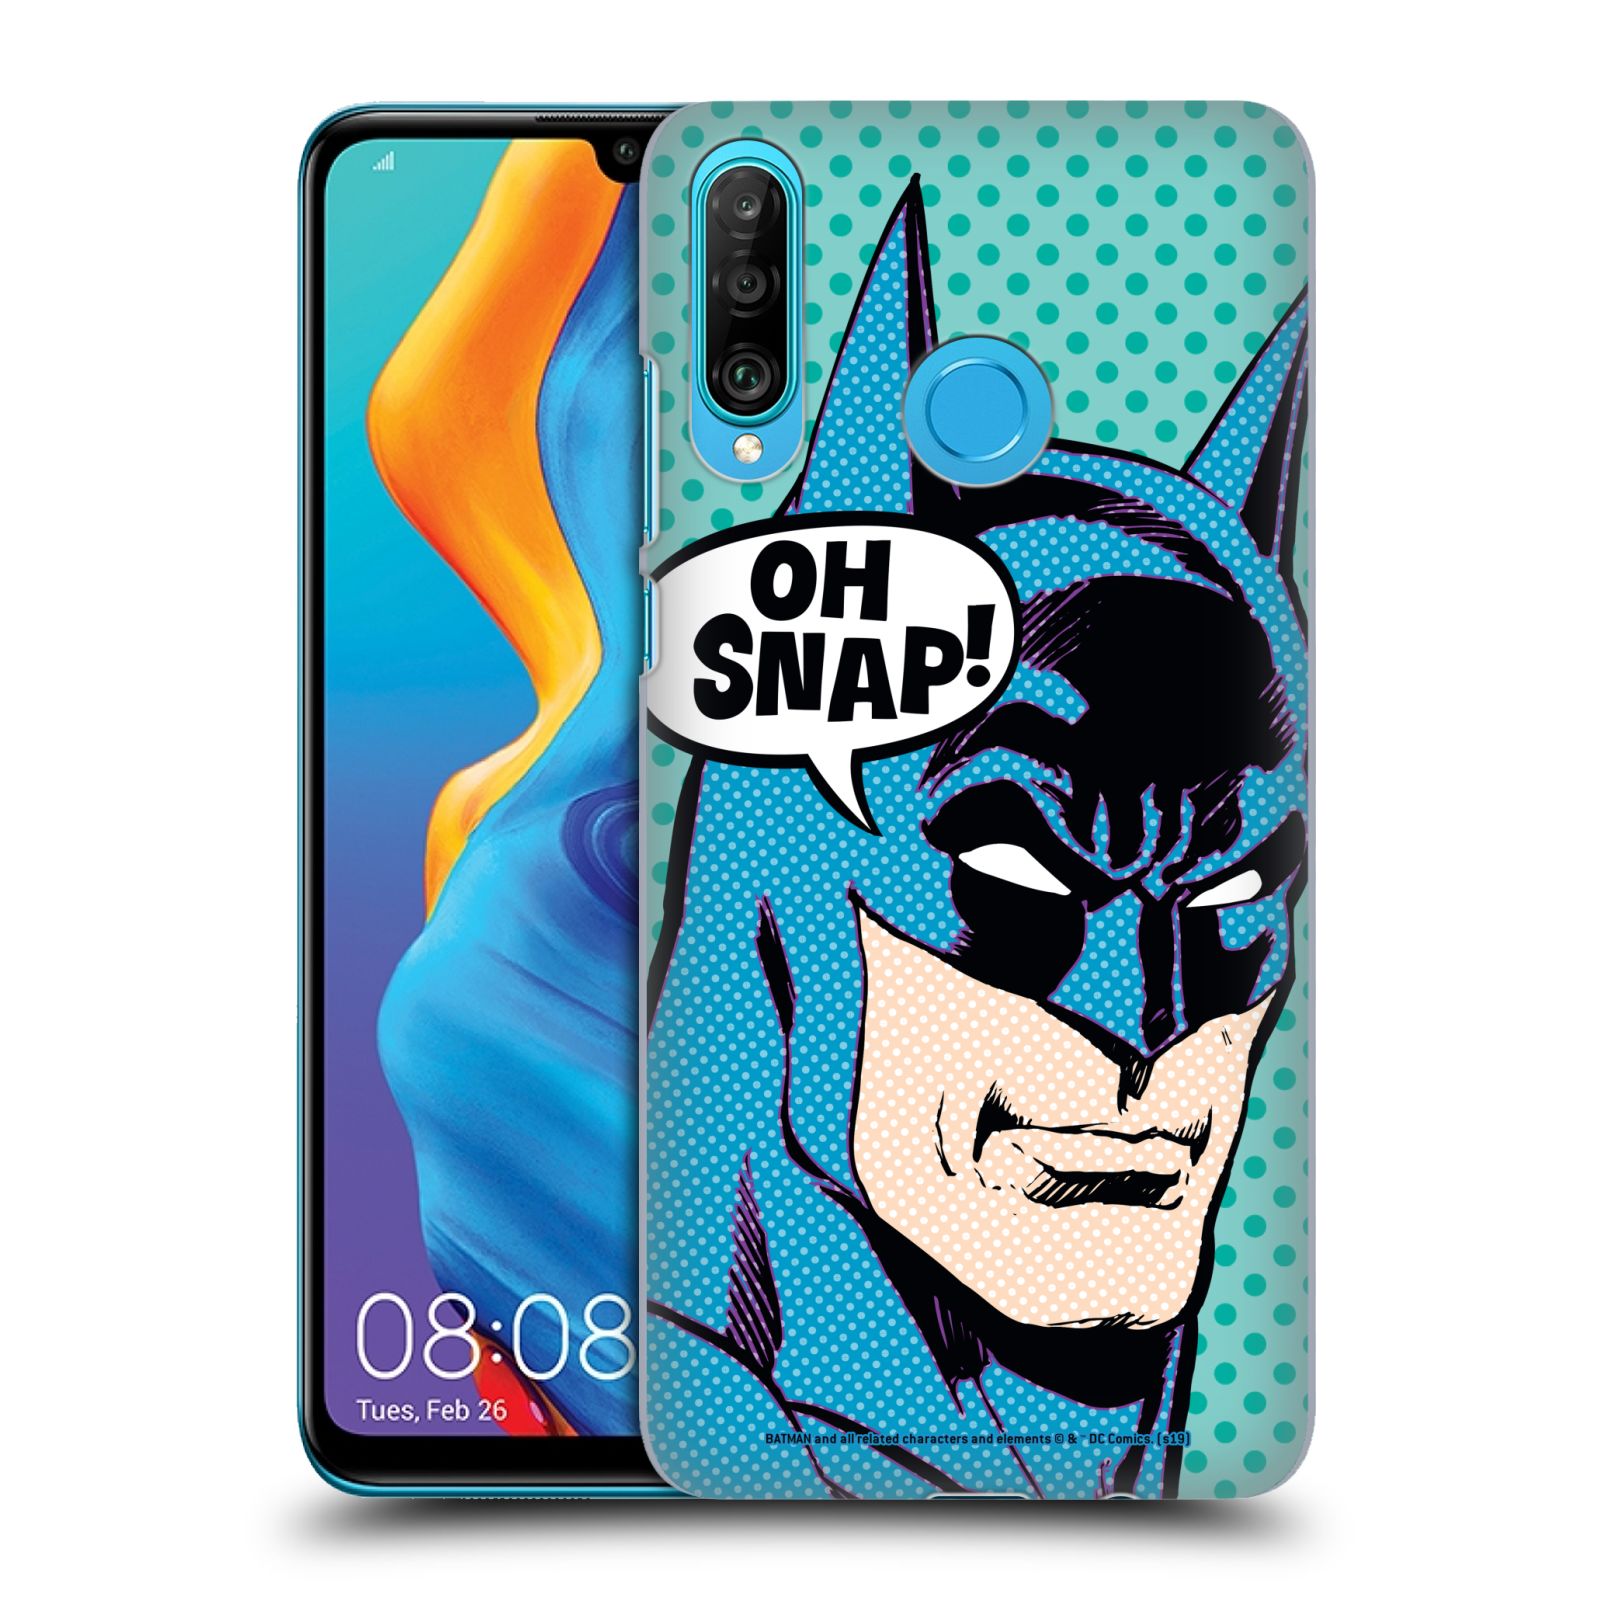 Pouzdro na mobil Huawei P30 LITE - HEAD CASE - DC komix Batman Pop Art tvář